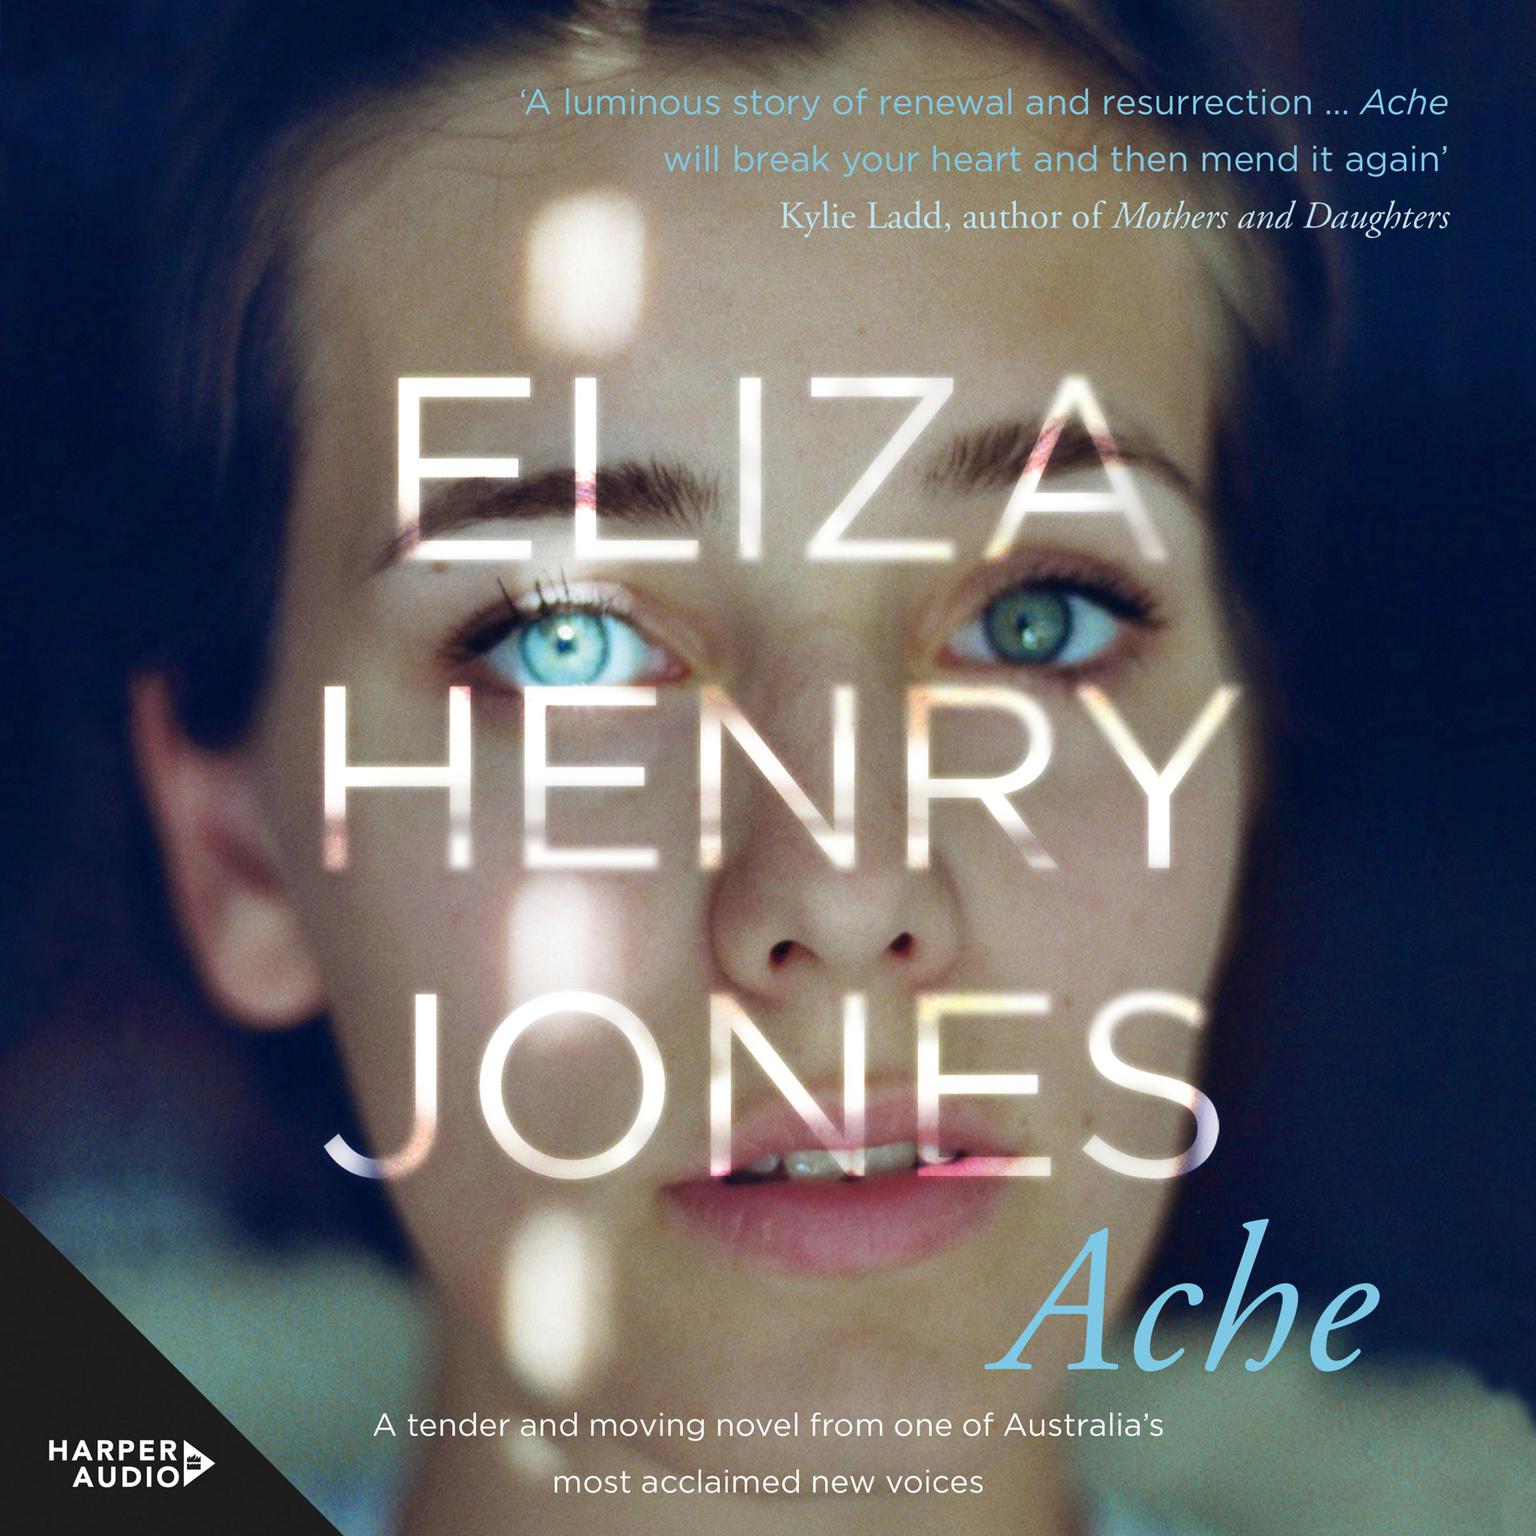 Ache Audiobook, by Eliza Henry Jones